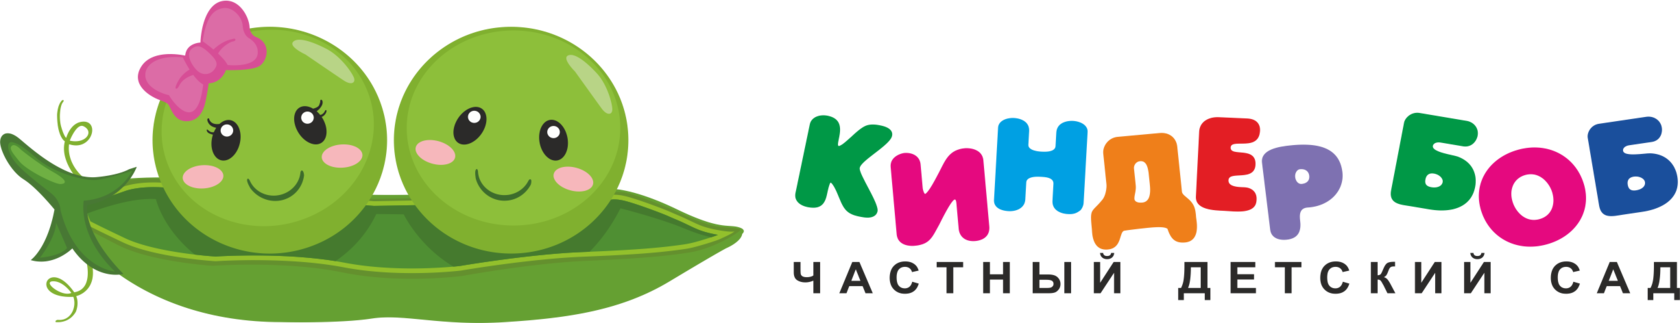 Логотип частного детского сада Киндер Боб